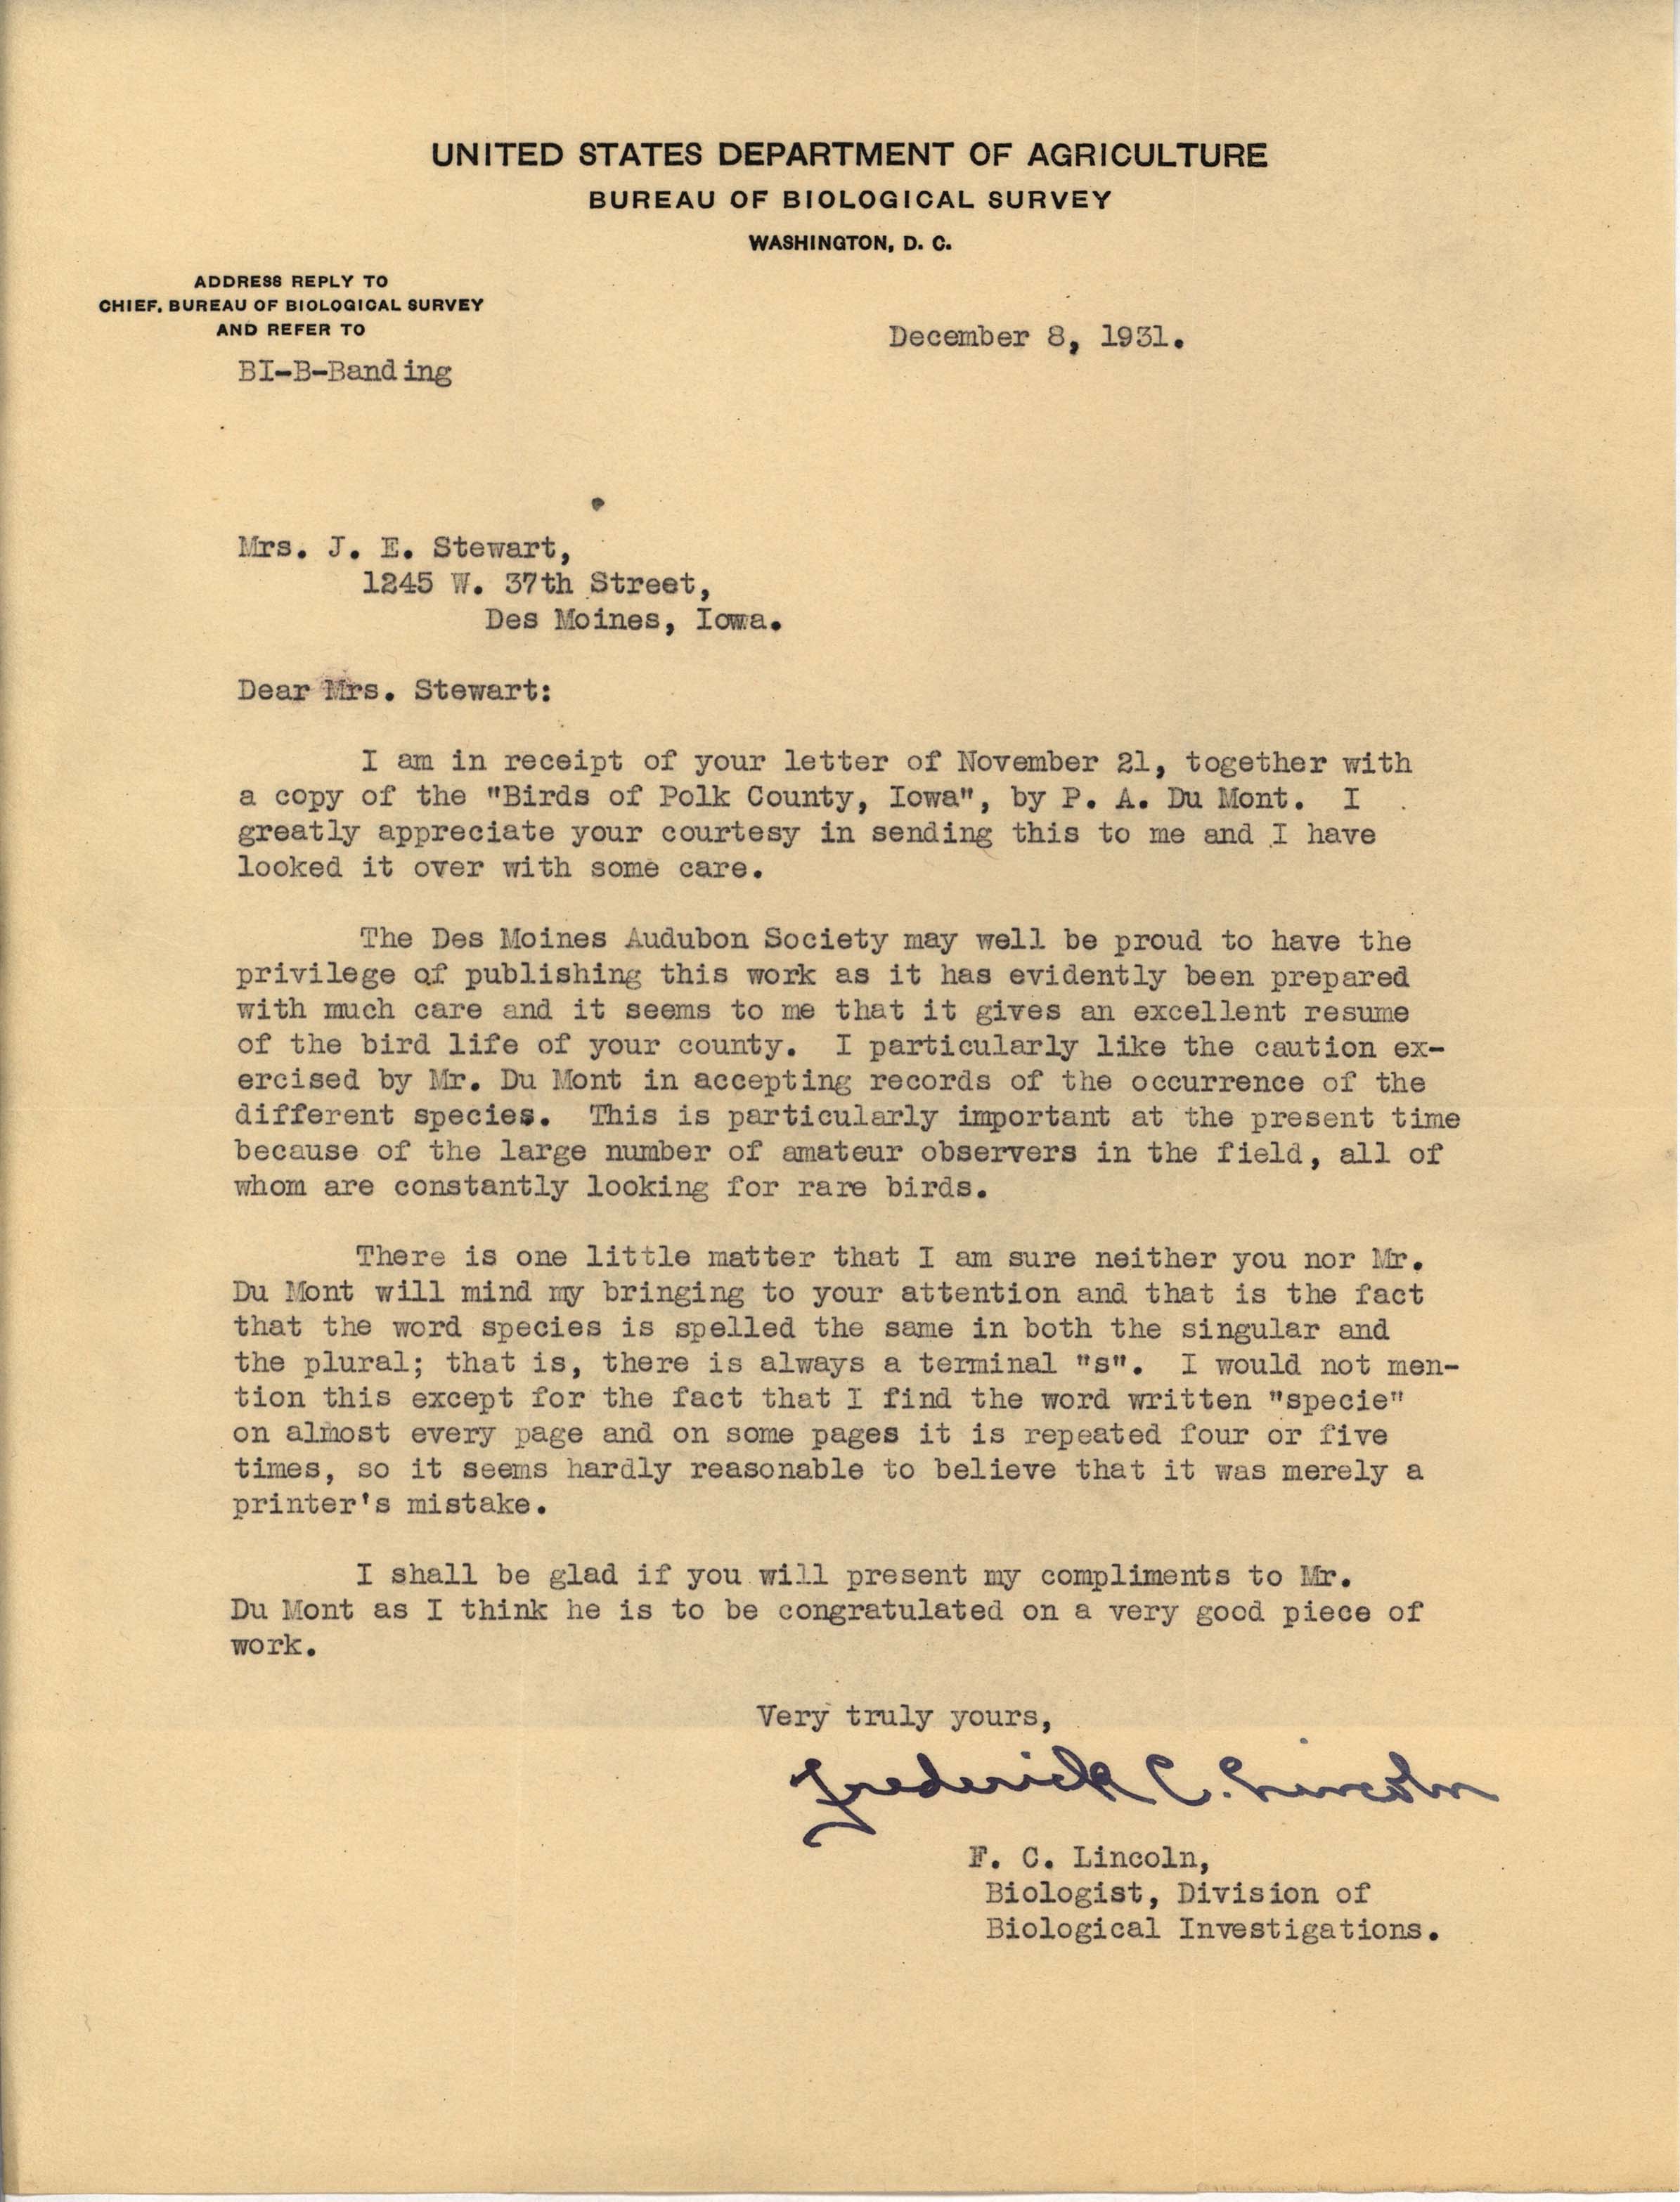 Frederick Lincoln letter to Mrs. J. E. Stewart regarding 